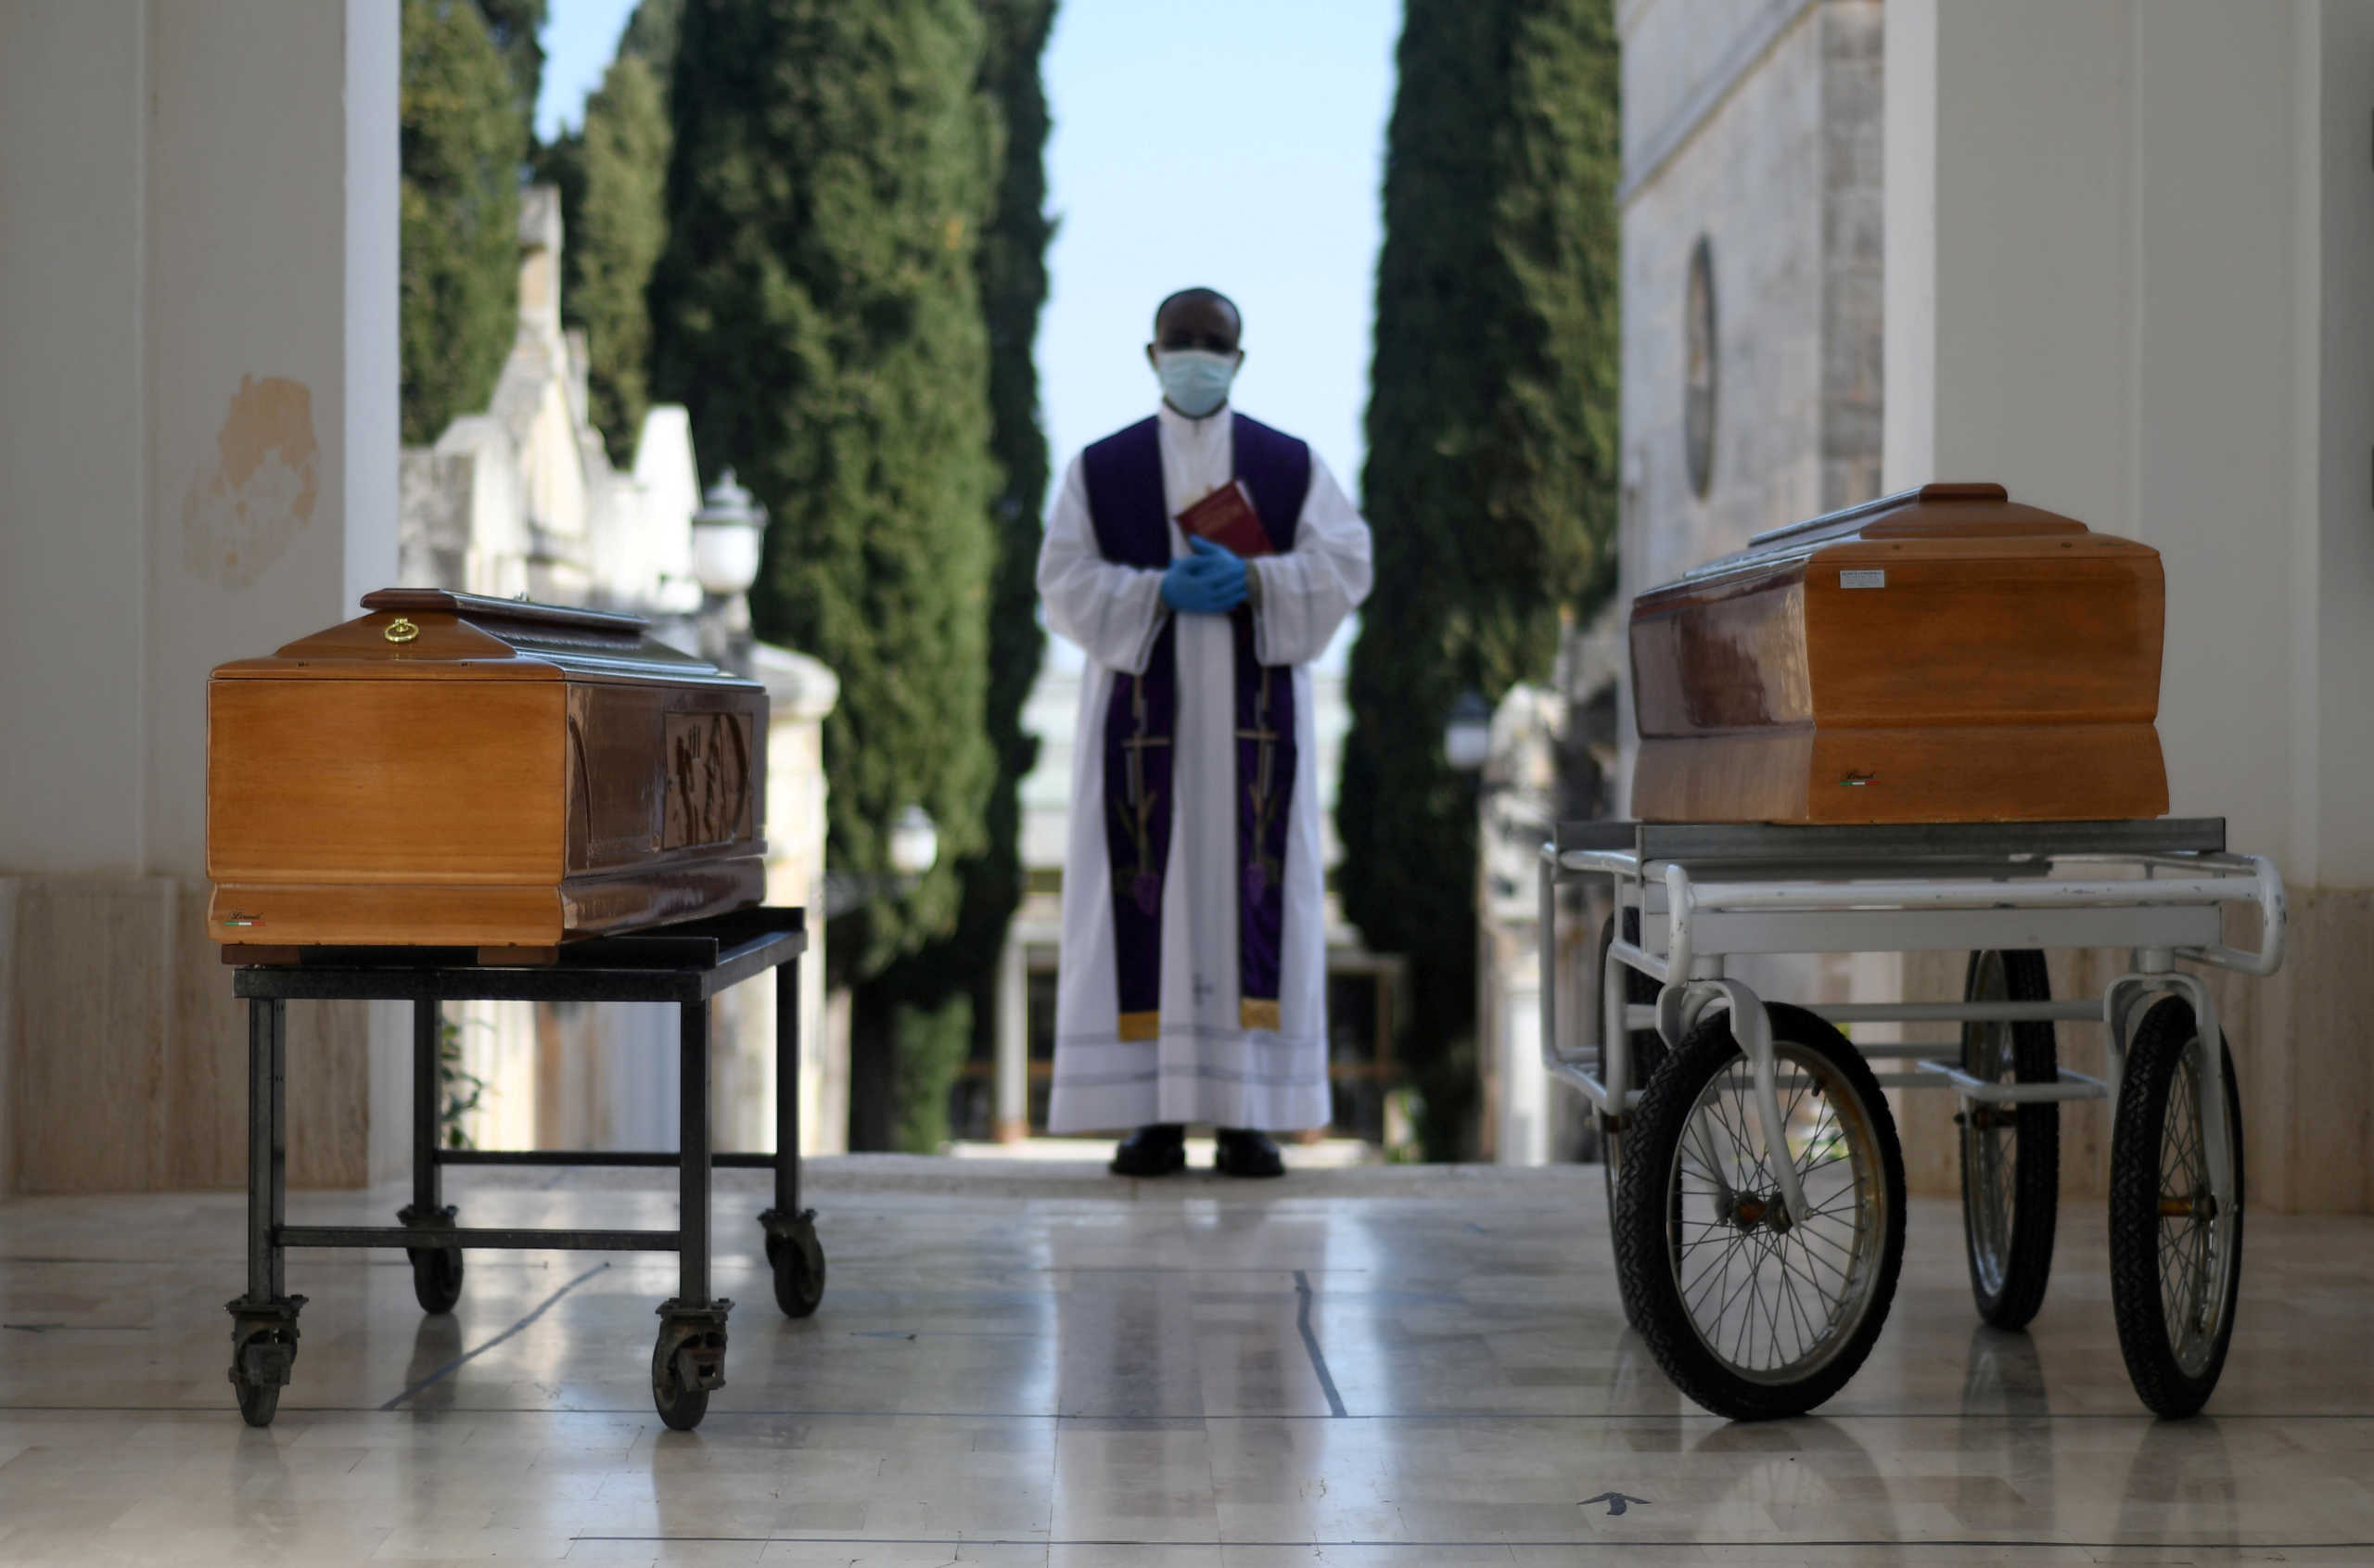 Έρευνα σοκ για νεκρούς και κρούσματα κορονοϊού στην Ιταλία – Ζαλίζουν οι αριθμοί